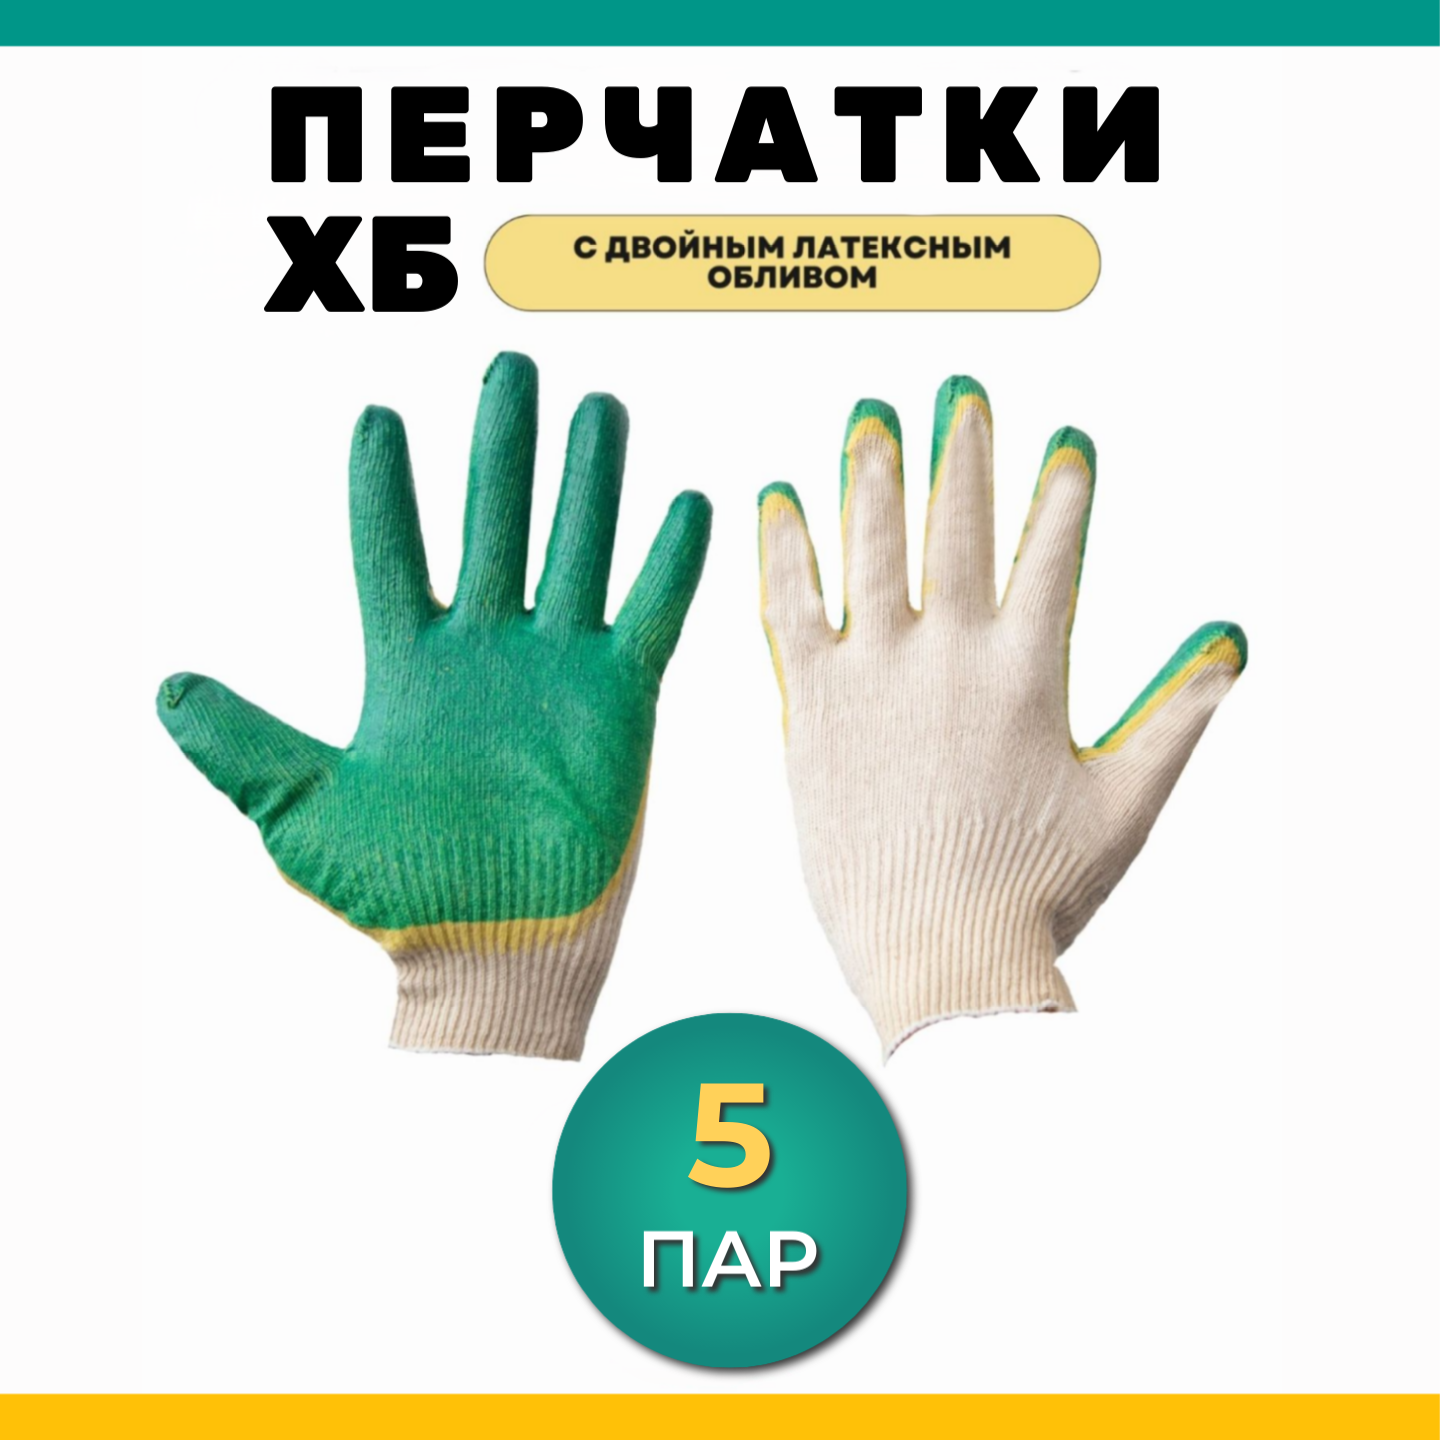 Перчатки защитные рабочие, перчатки ХБ с двойным латексным обливом, 5 пар